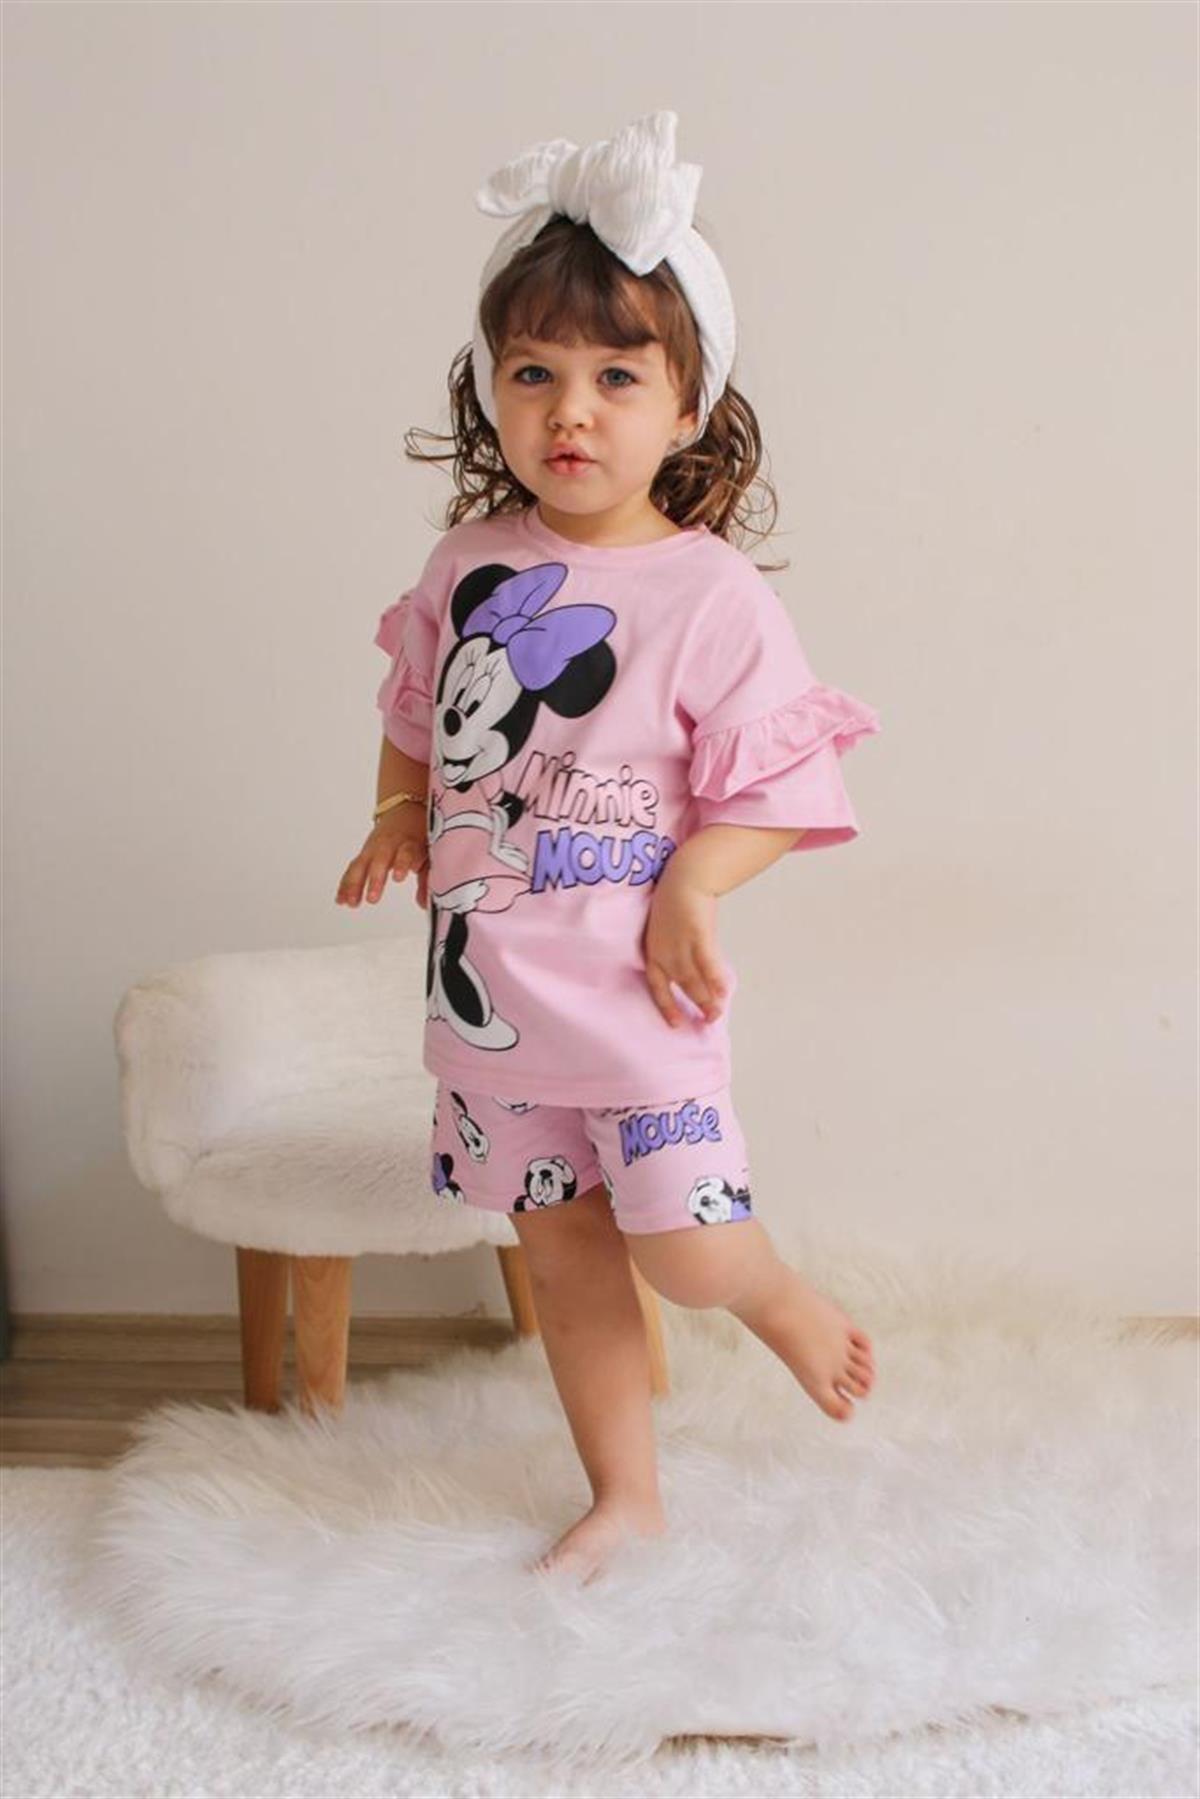 Zara Pembe Minnie Mouse Figürlü Kız Bebek (Çocuk) Tişört ve Şort Takım